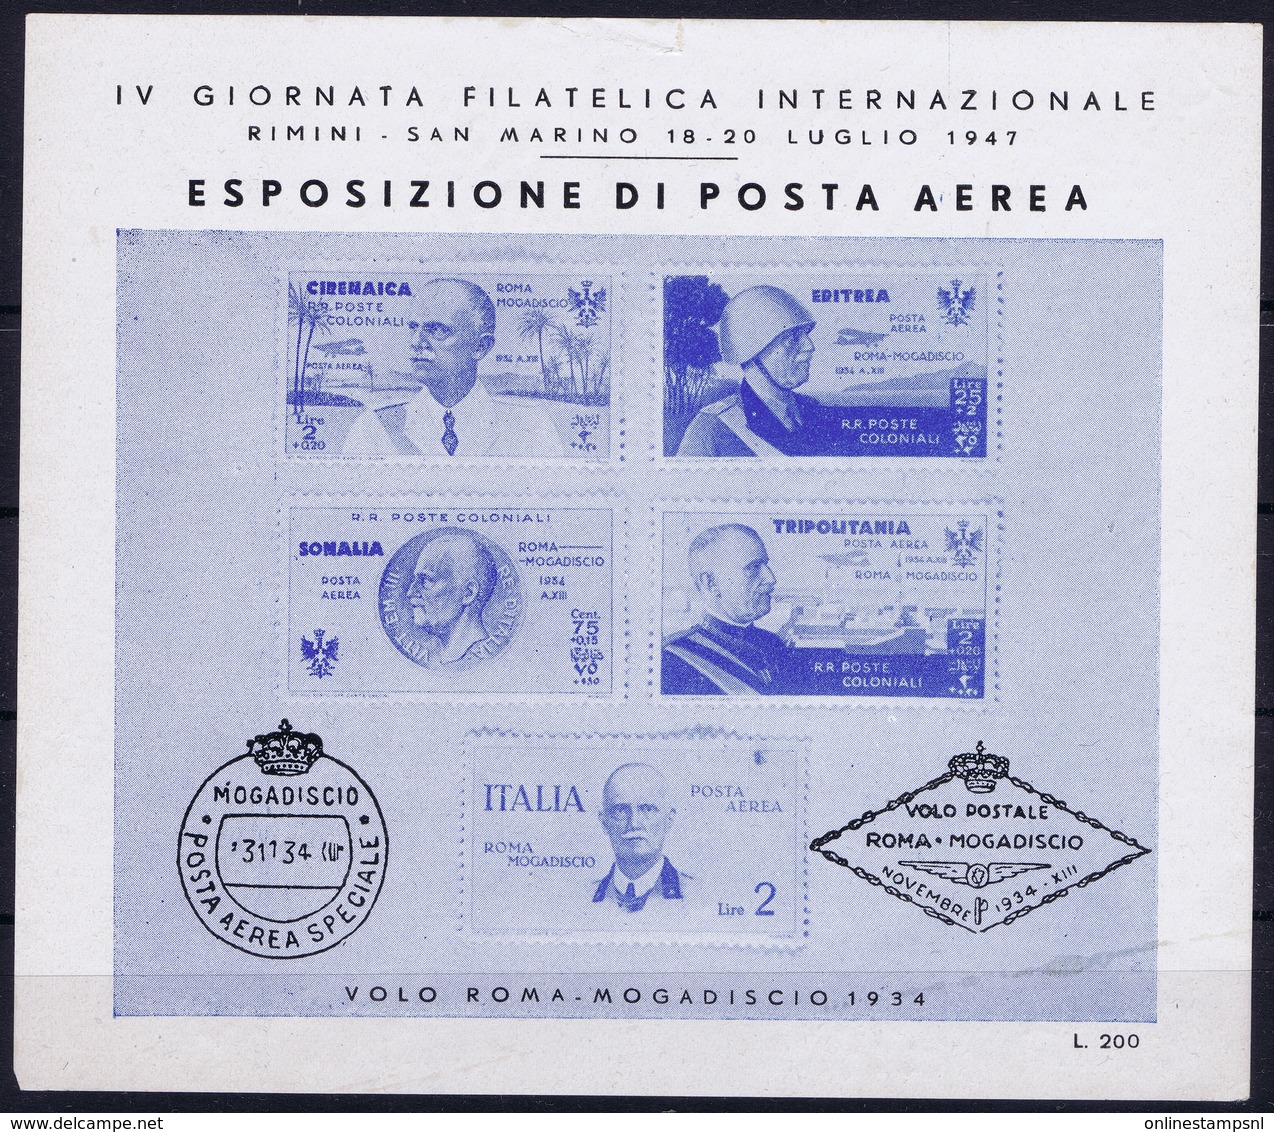 ITALY  ESPOSIZIONE DI POSTA AEREA   IV GIORNATA FILATELICA  VOLO ROMA - MOGADISCIO 1934   RIMINI S. MARINO 1947 - Posta Aerea